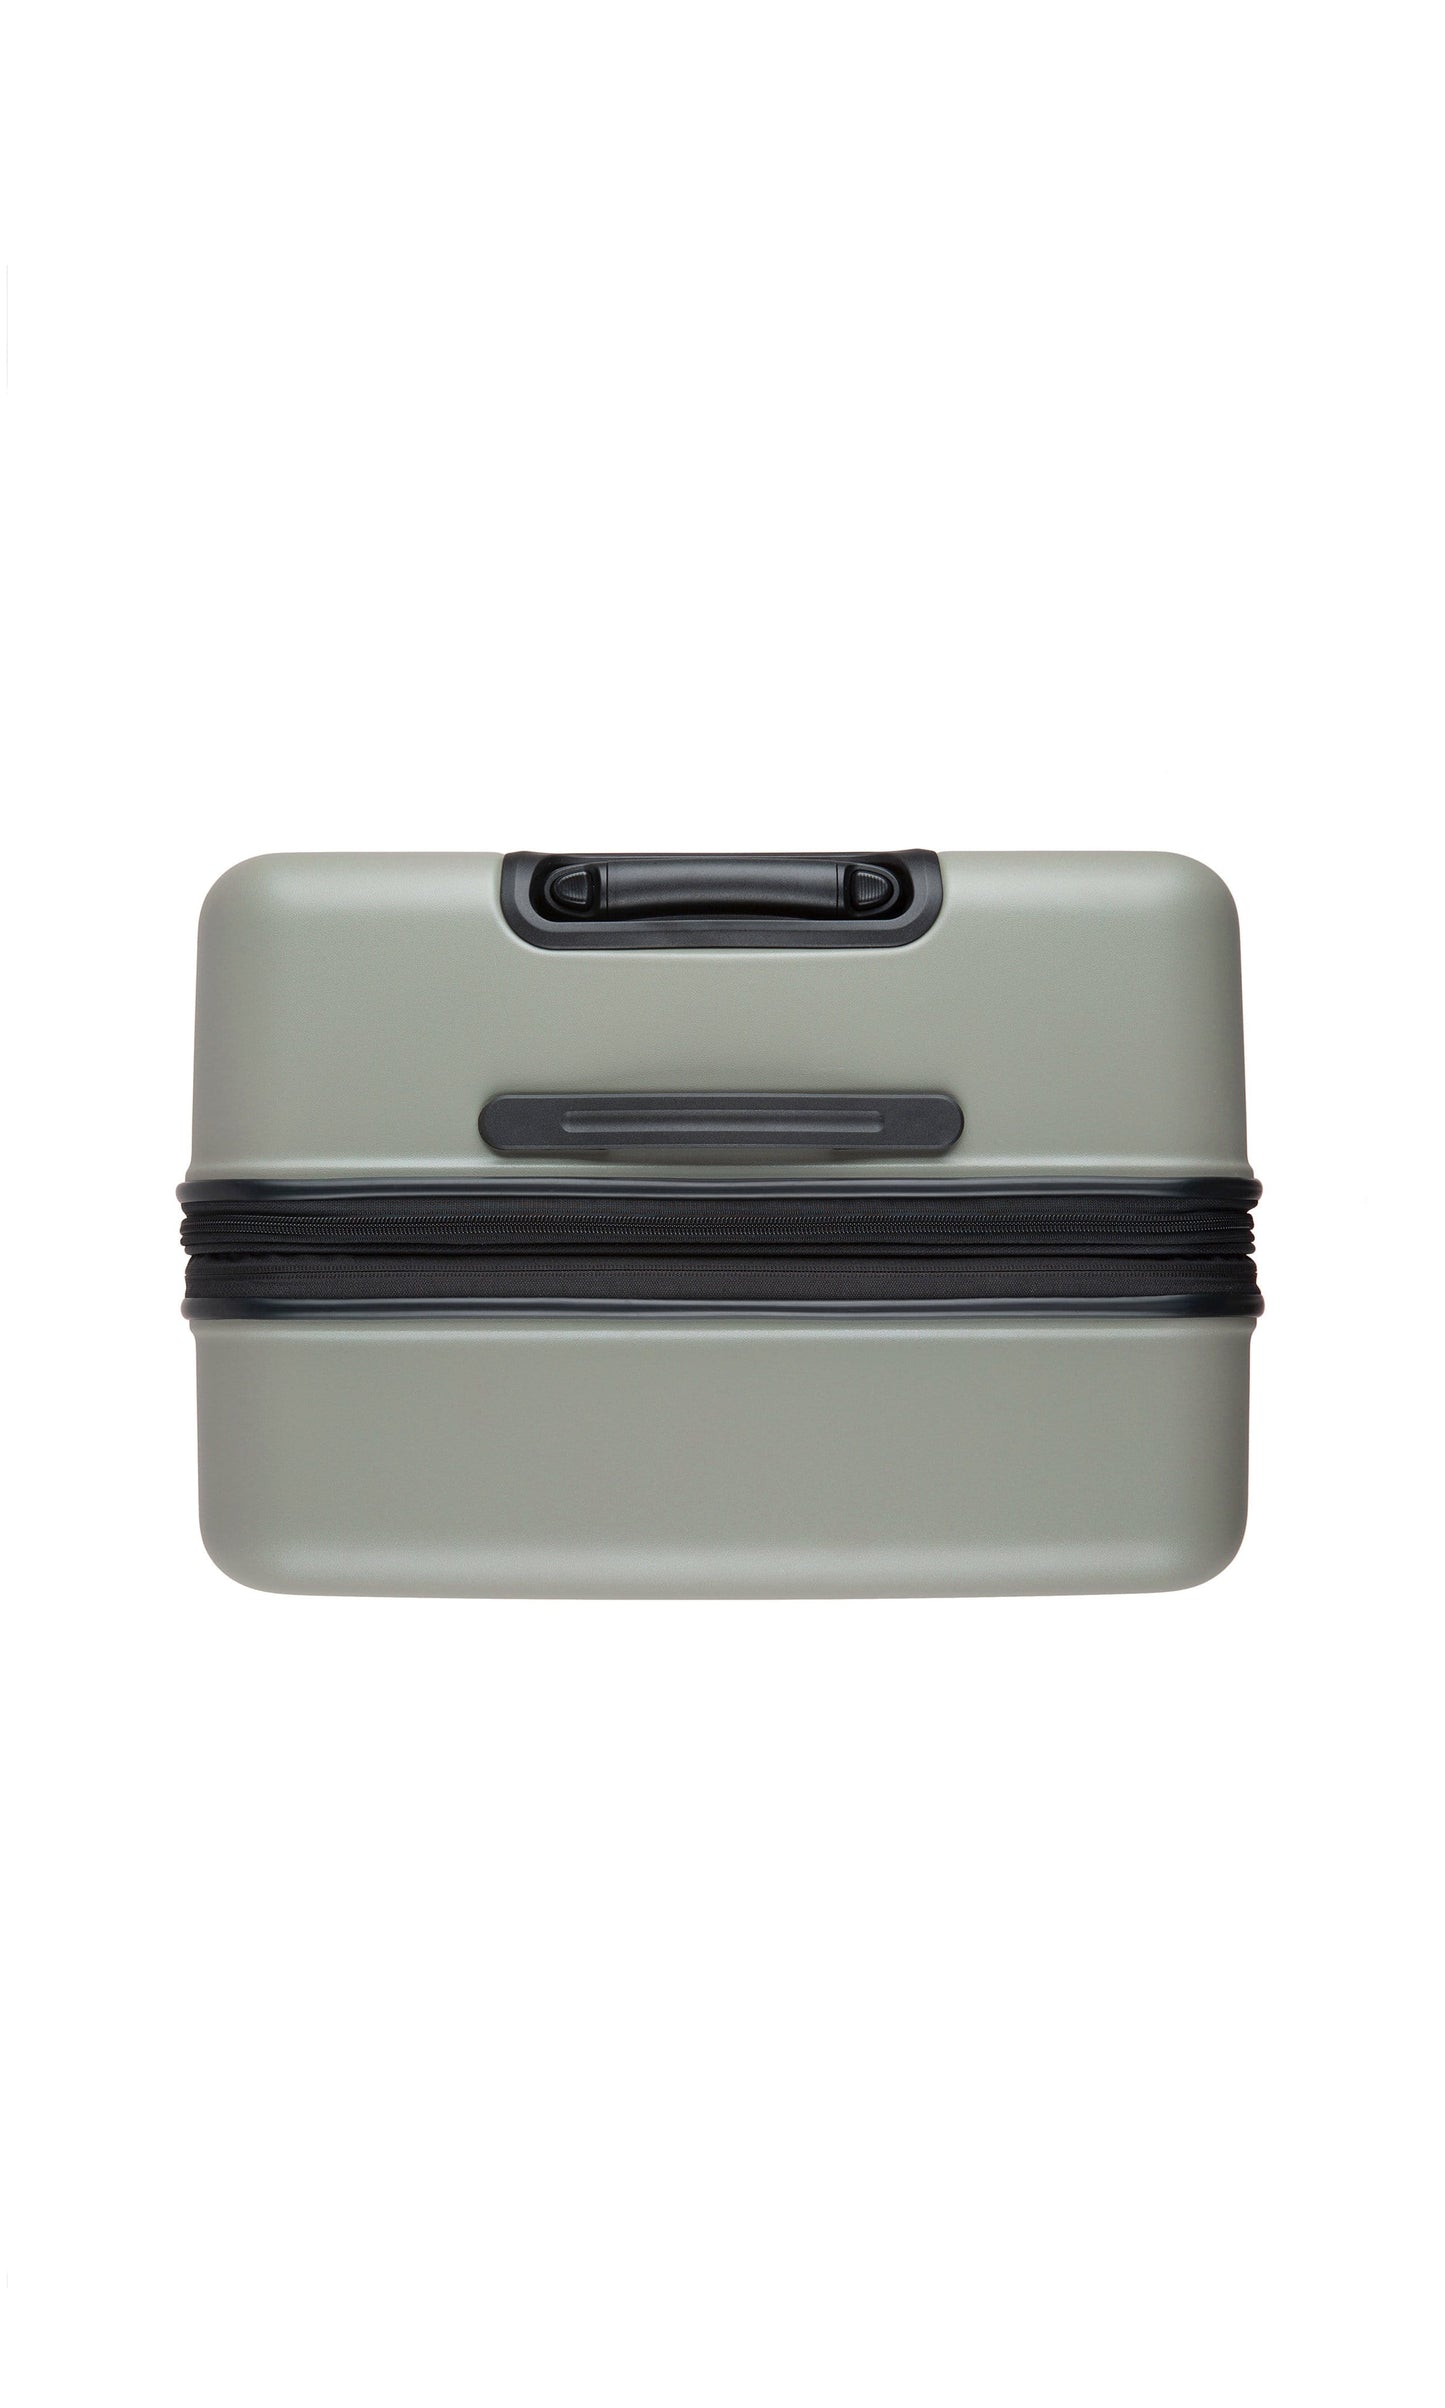 Antler Luggage -  Clifton large in sage - Hard Suitcases Clifton Large Suitcase Sage | Hard Suitcase | Antler UK